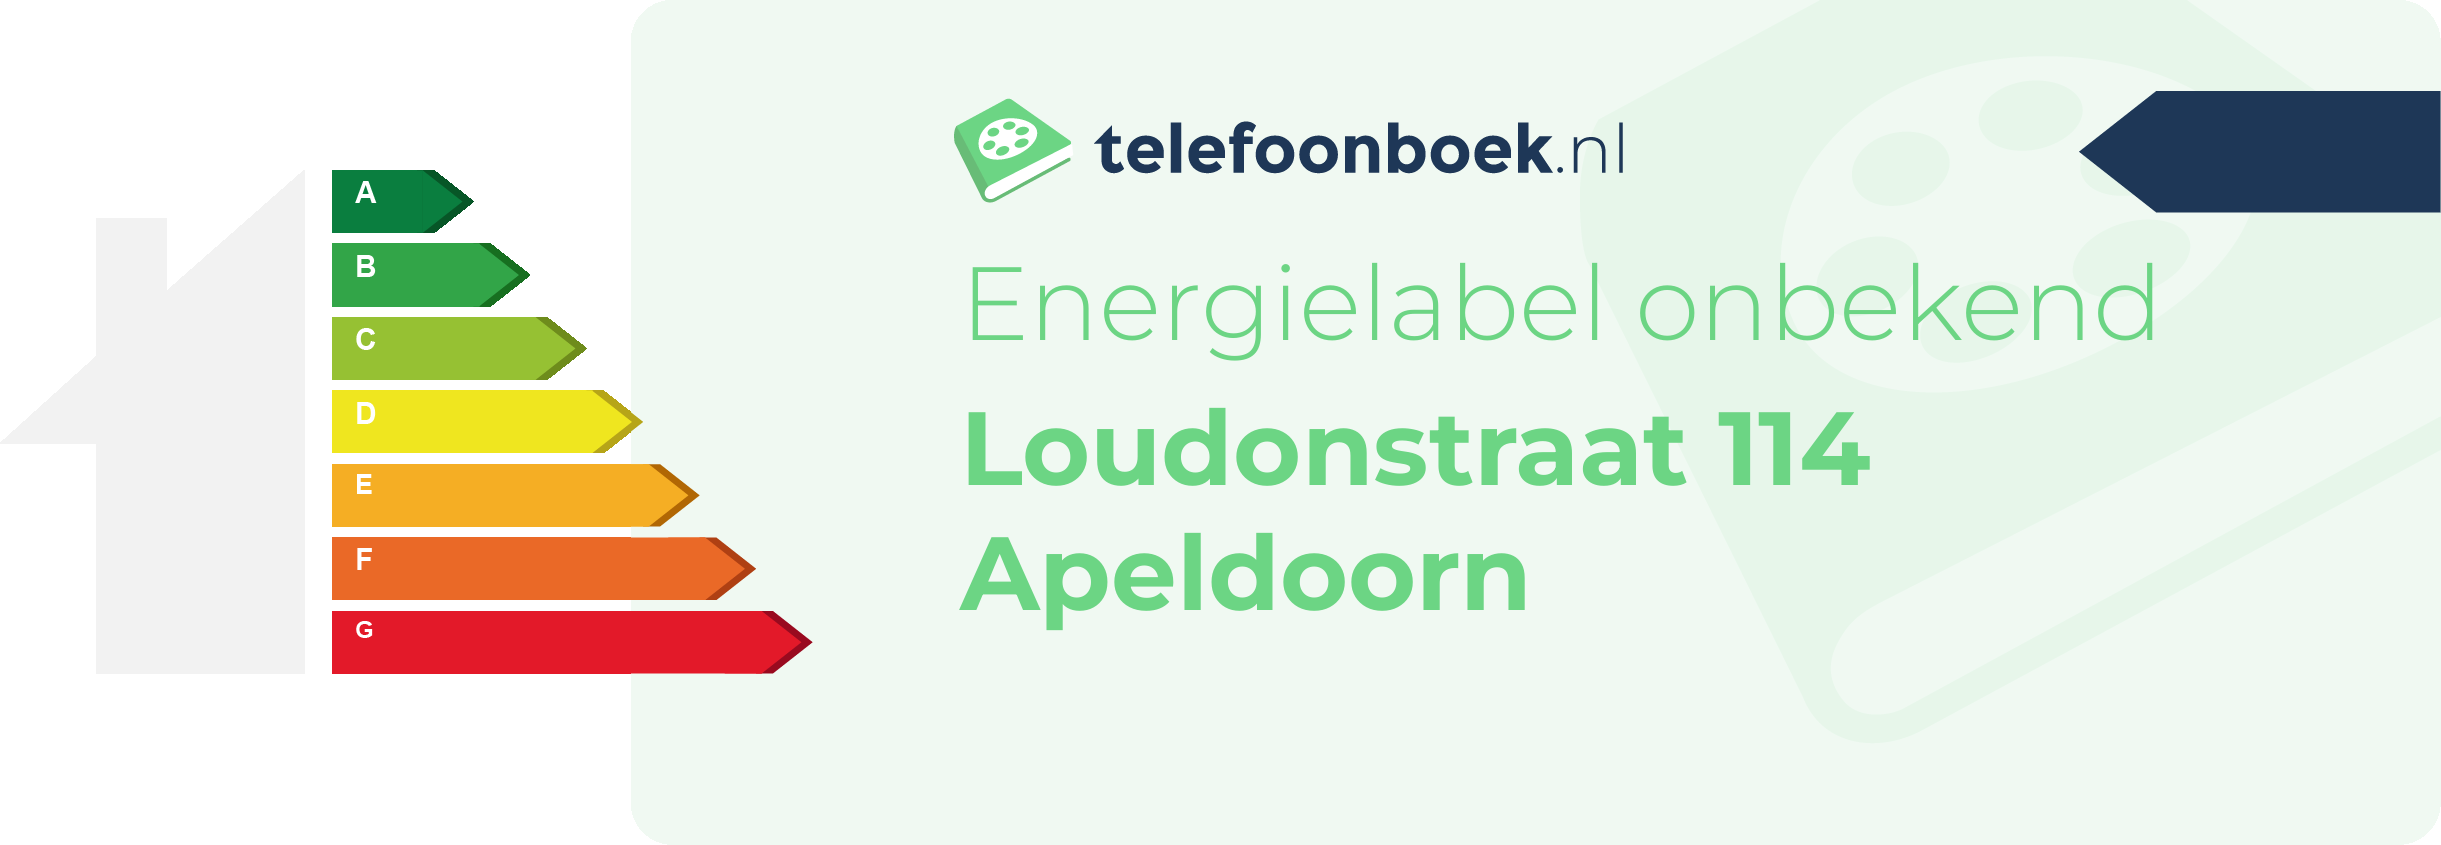 Energielabel Loudonstraat 114 Apeldoorn